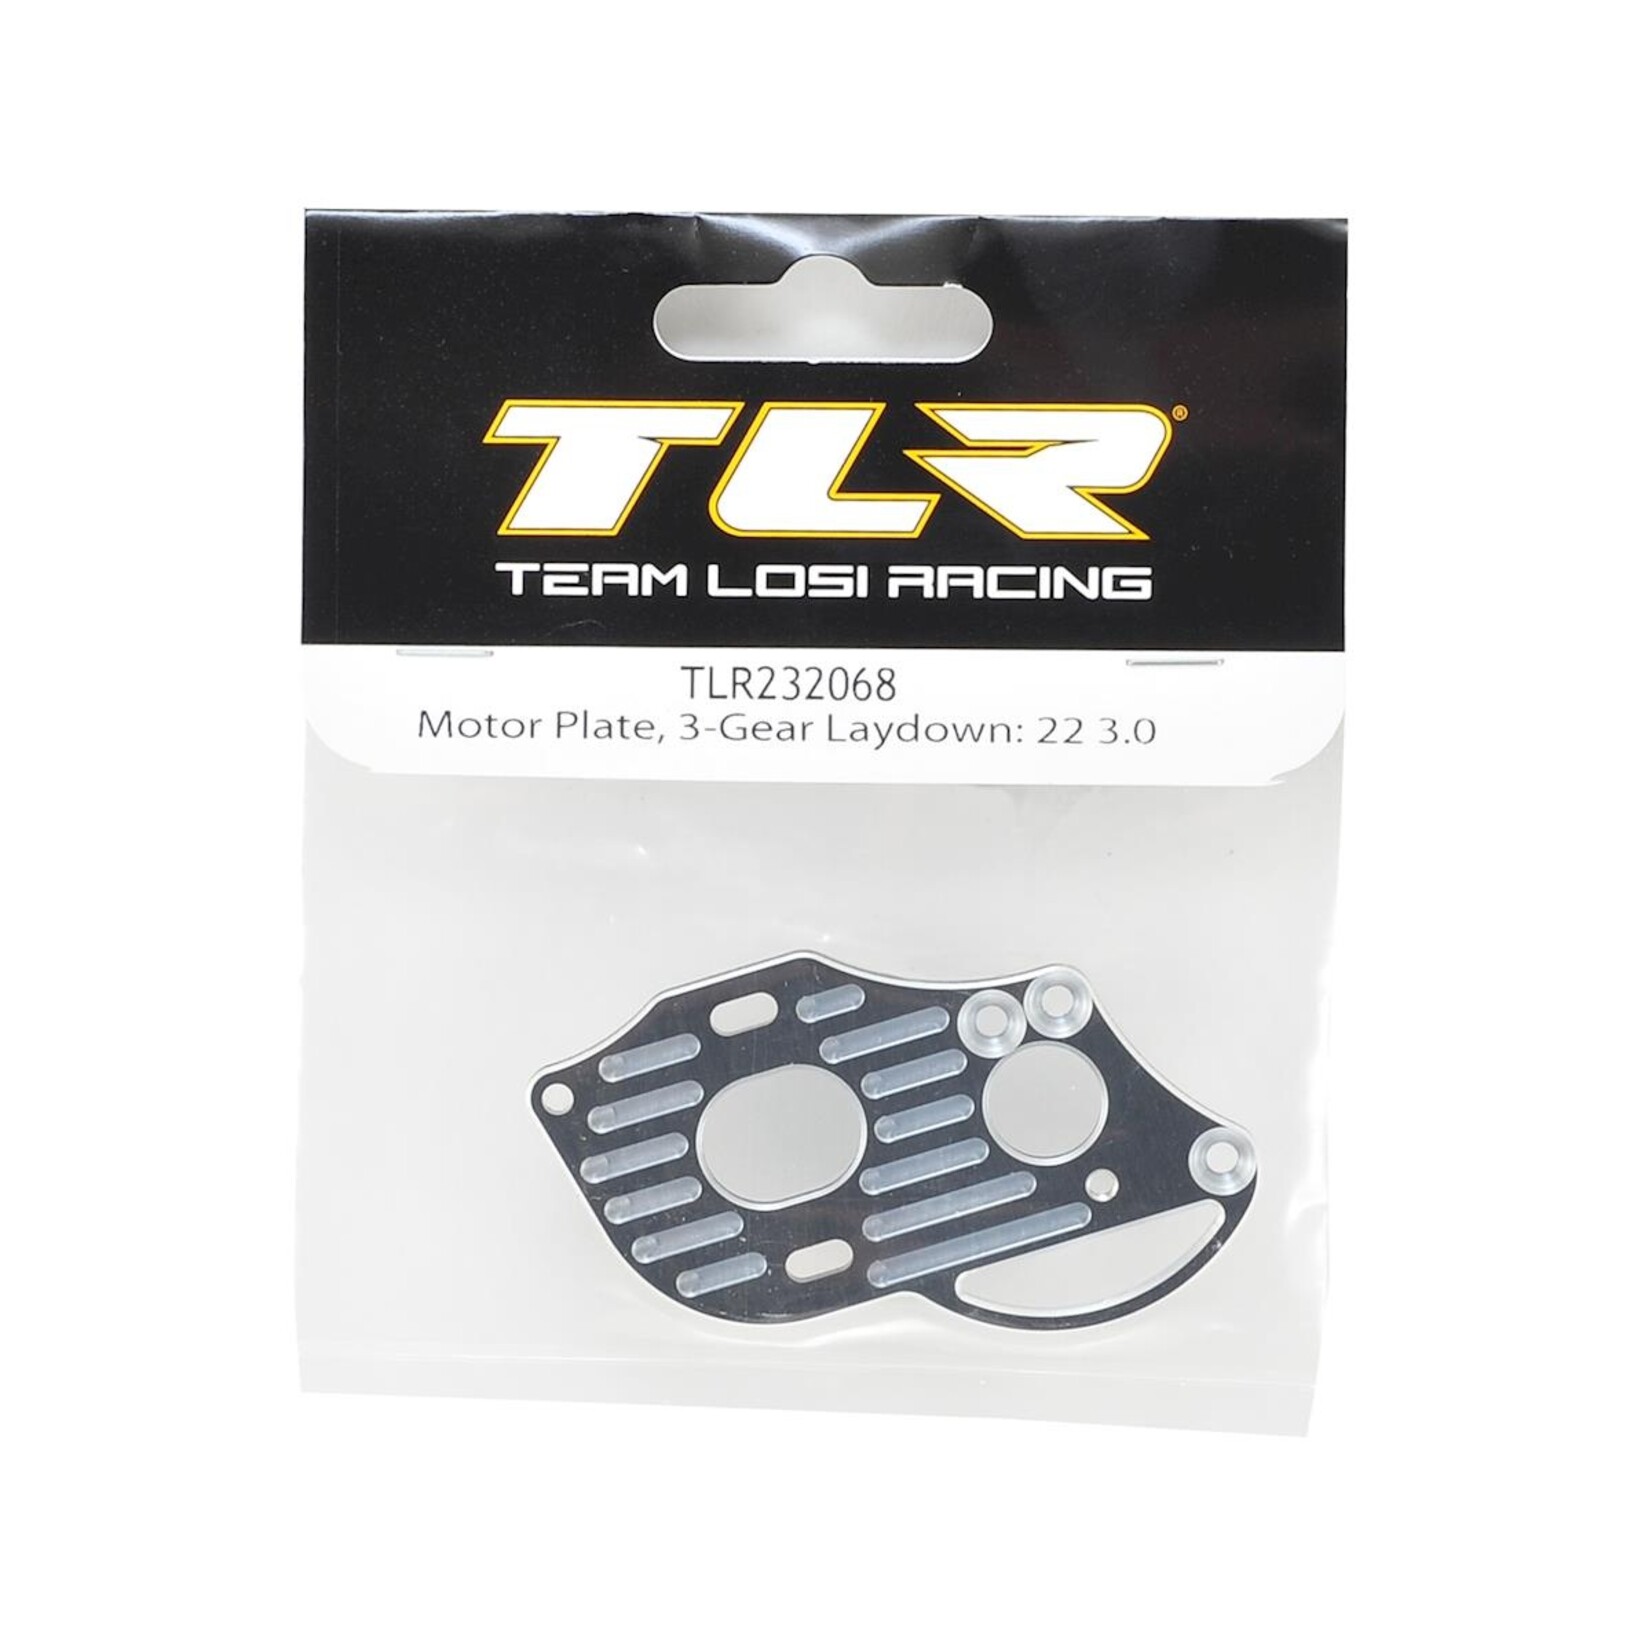 TLR Team Losi Racing 22 4.0 3-Gear Laydown Motor Plate #TLR232068